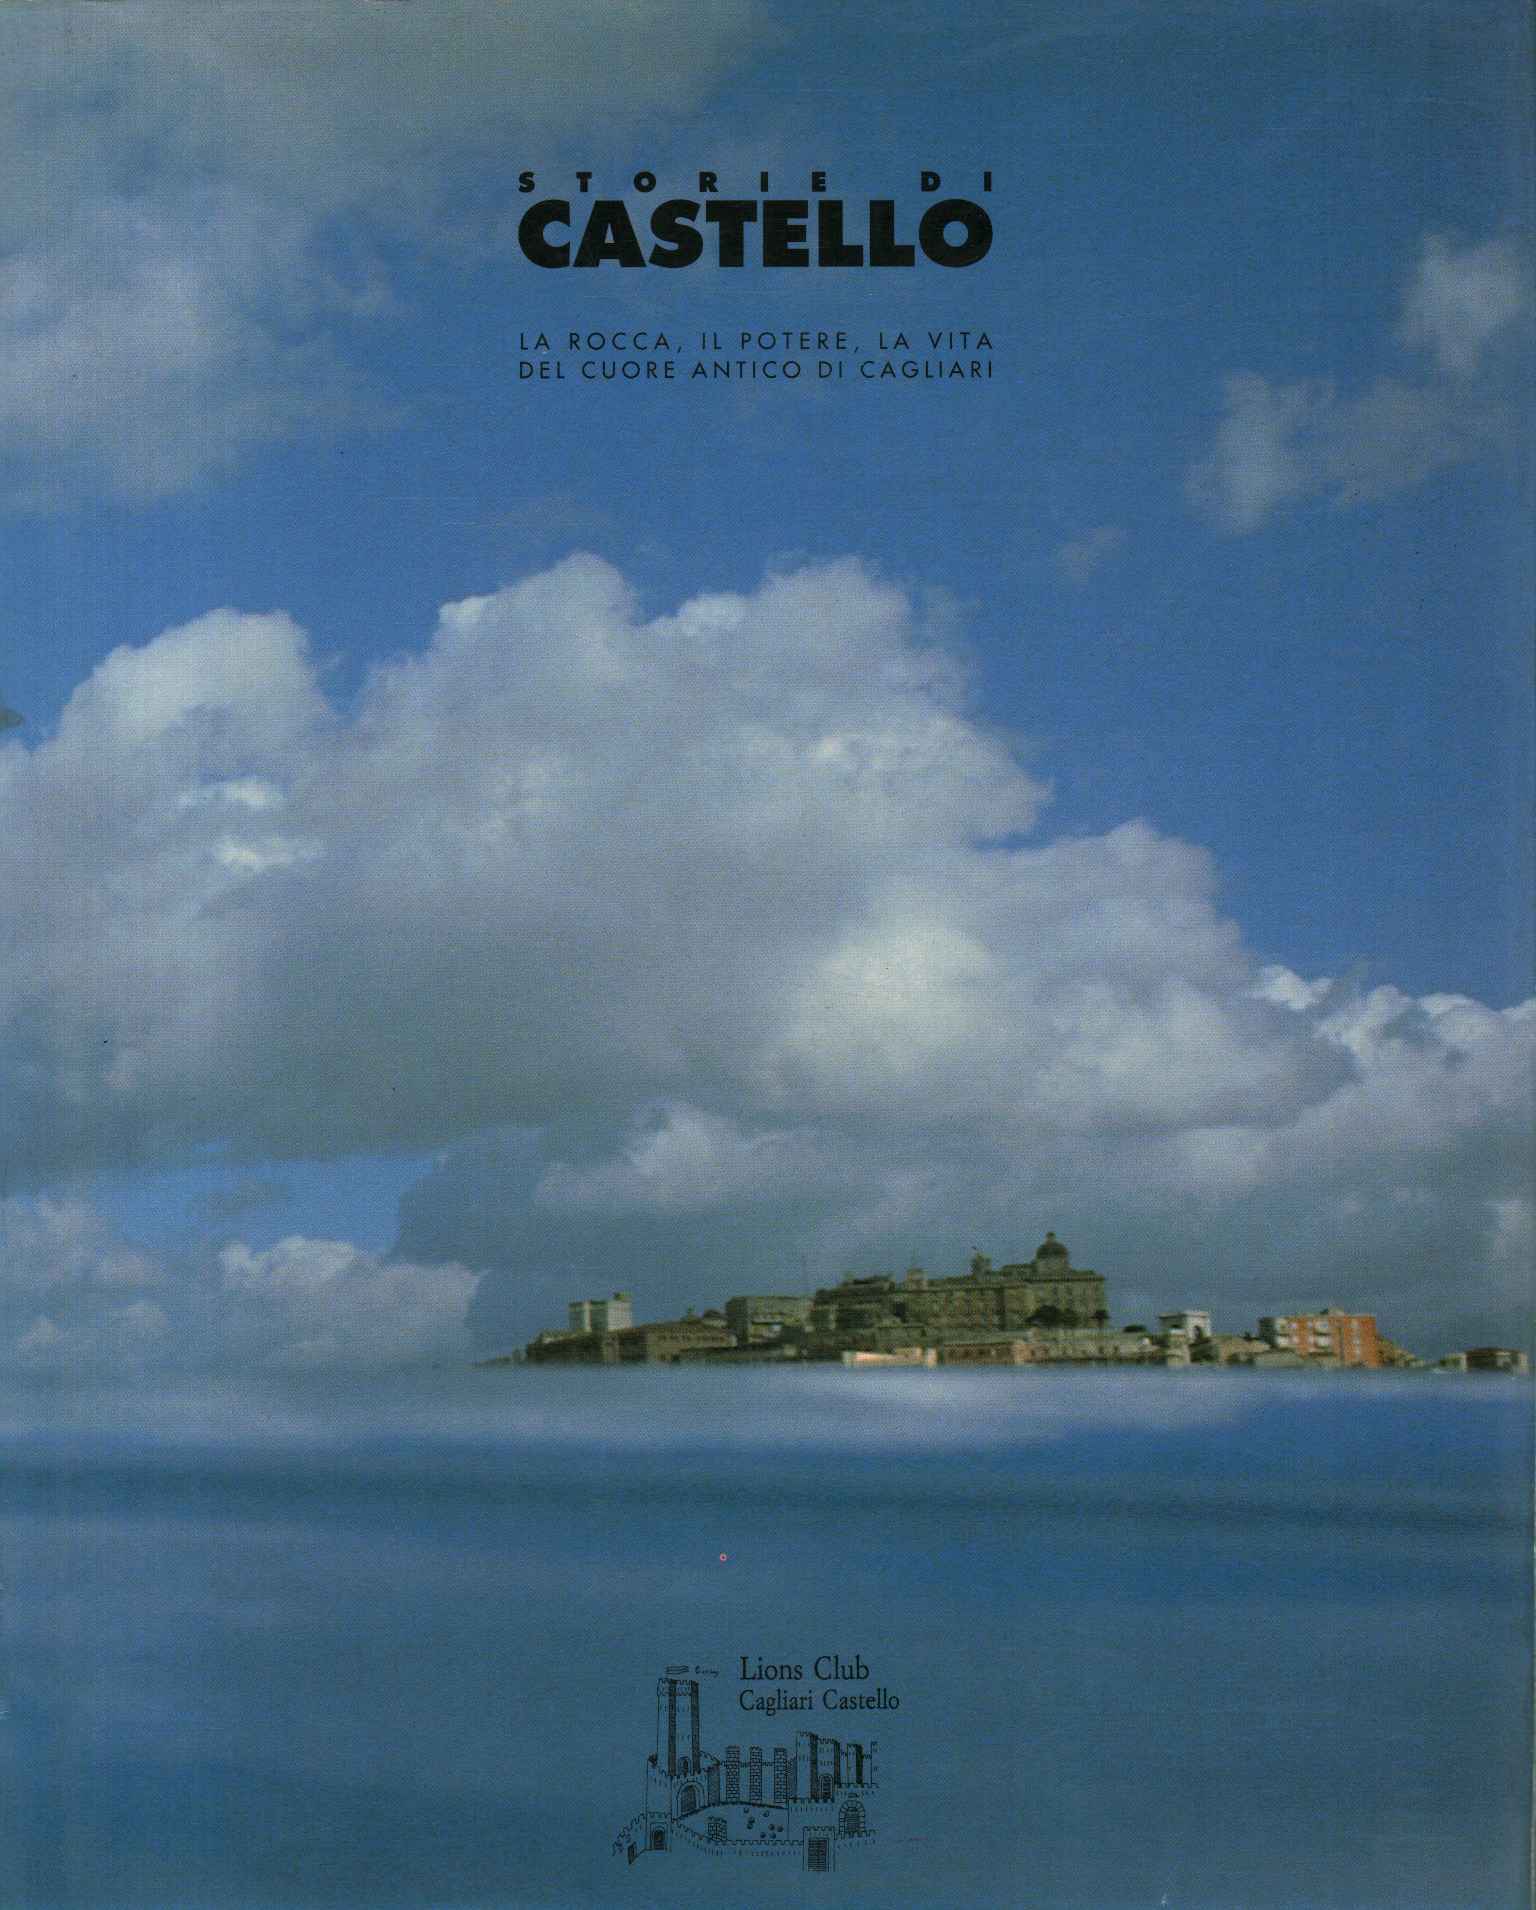 Castle Stories